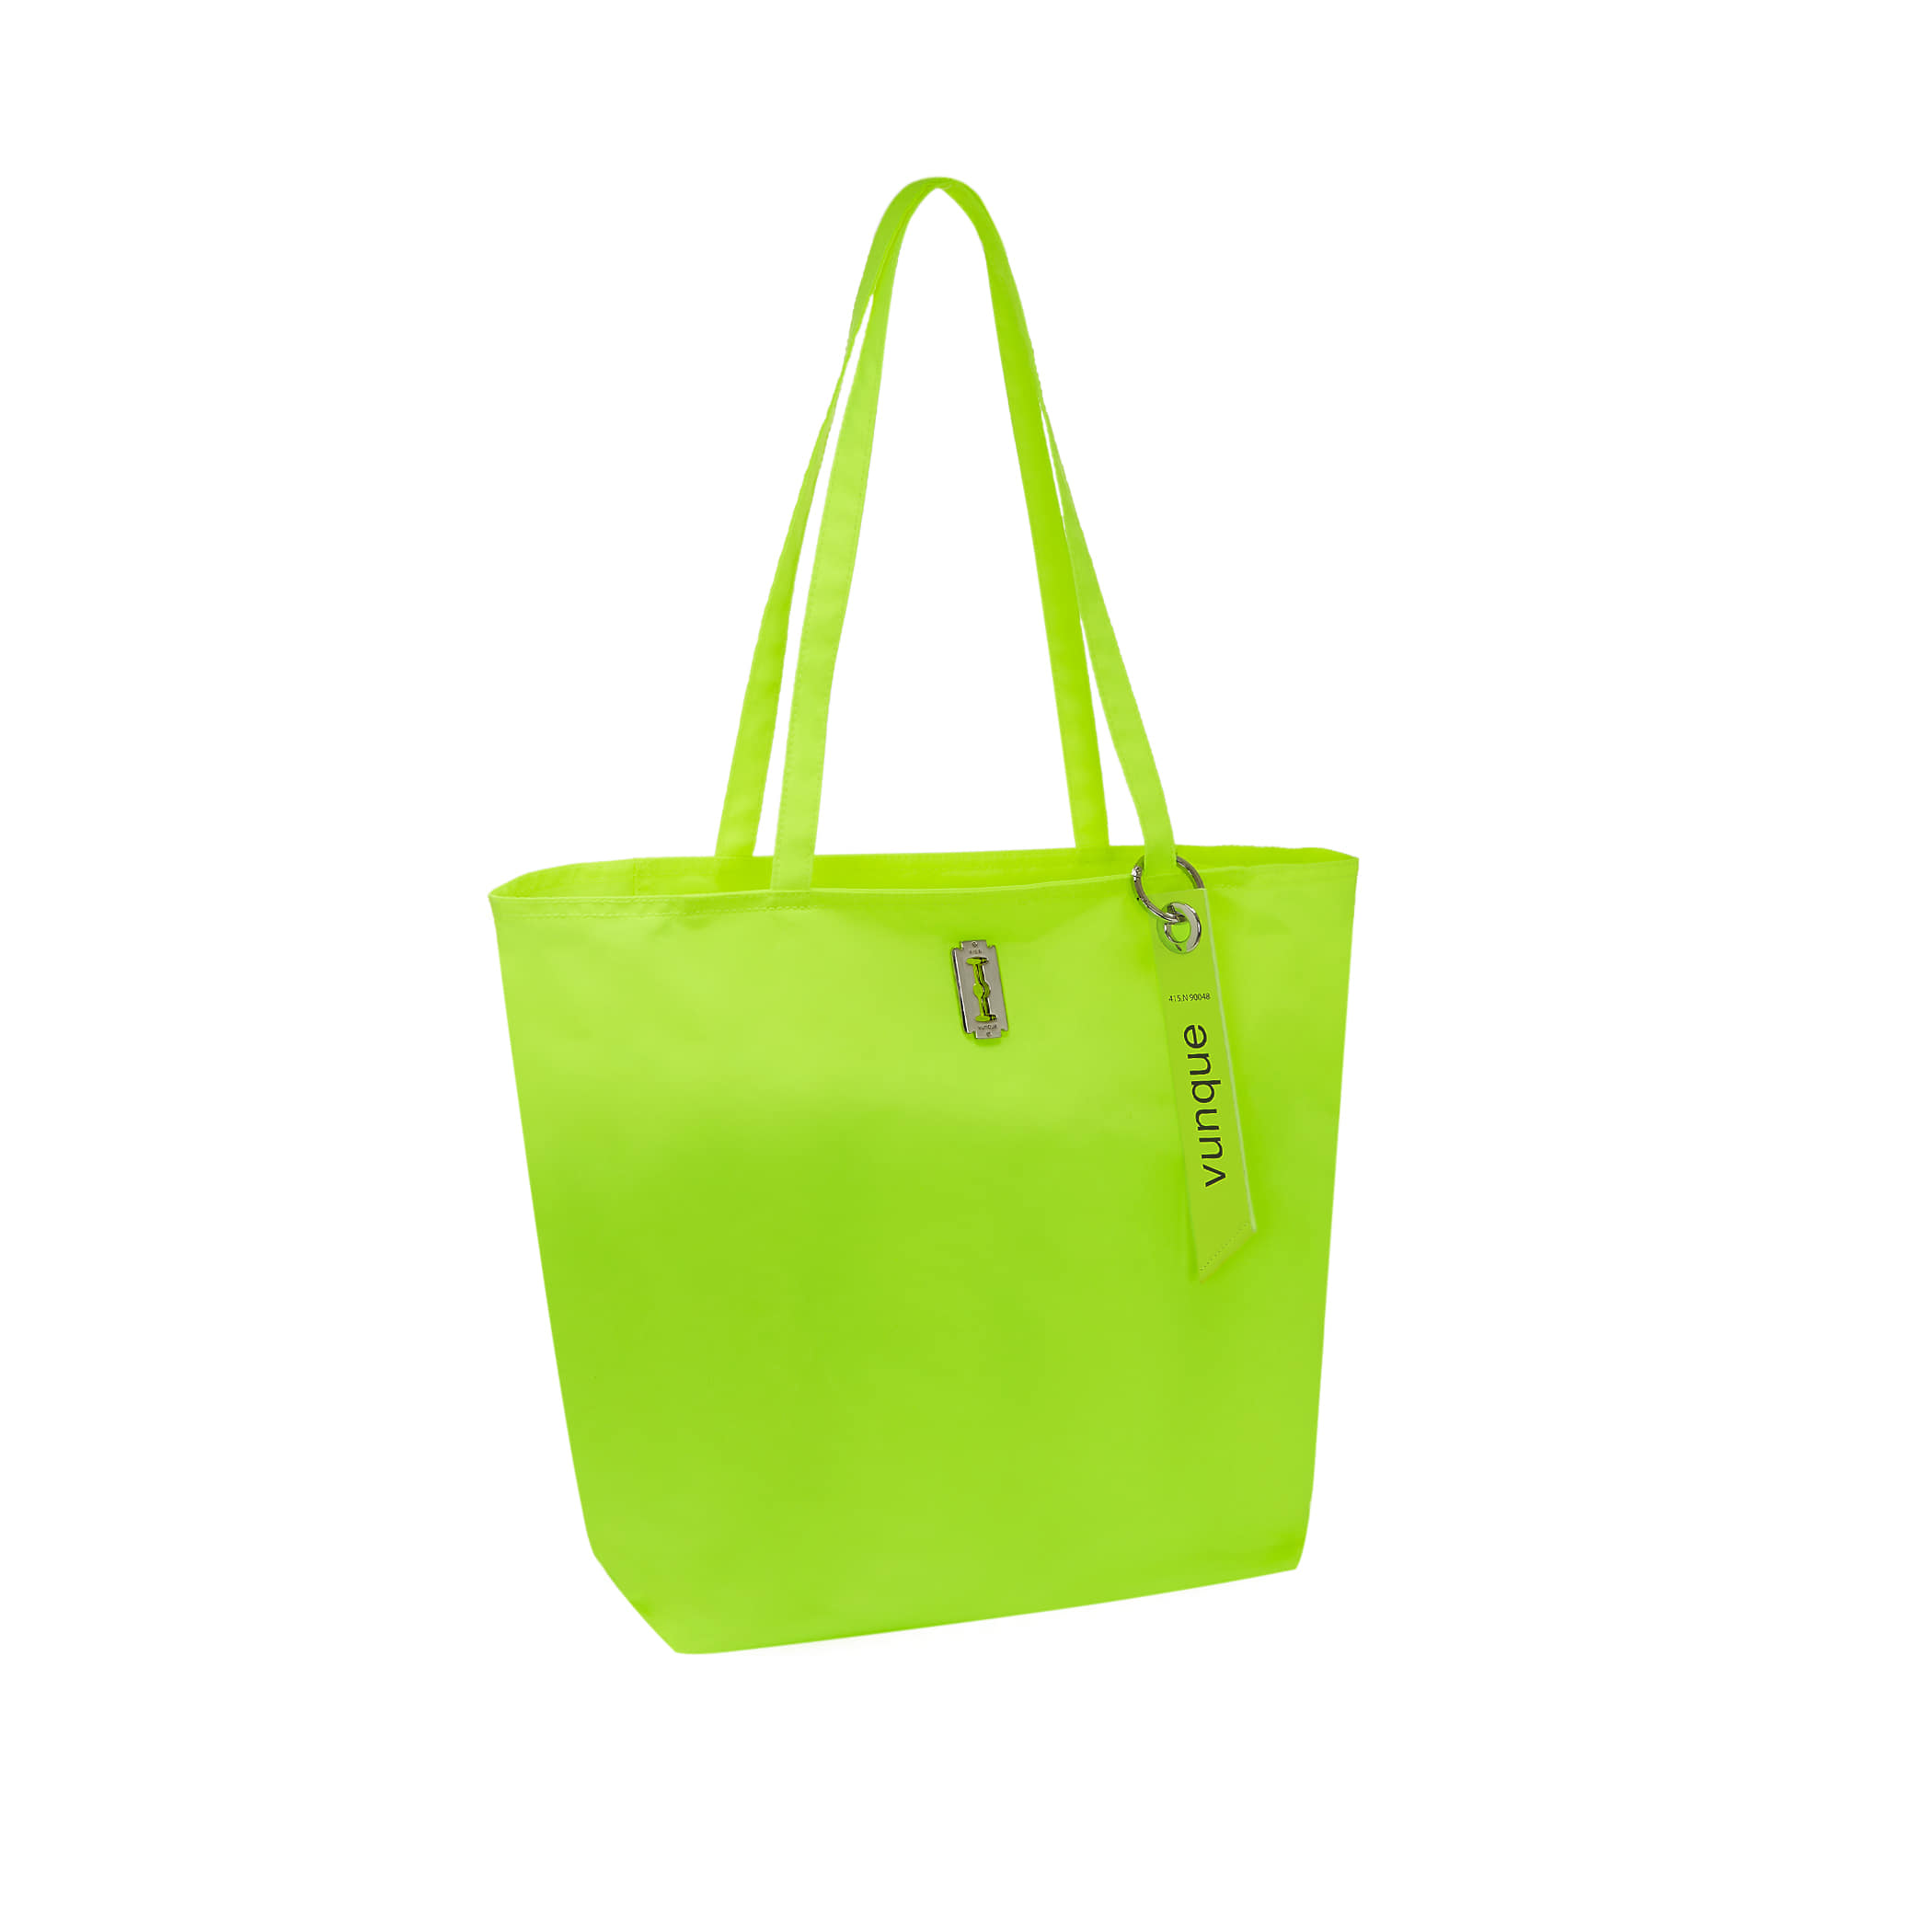 [아울렛] Hey Pass Shopper Bag (헤이 패스 쇼퍼백) Neon yellow